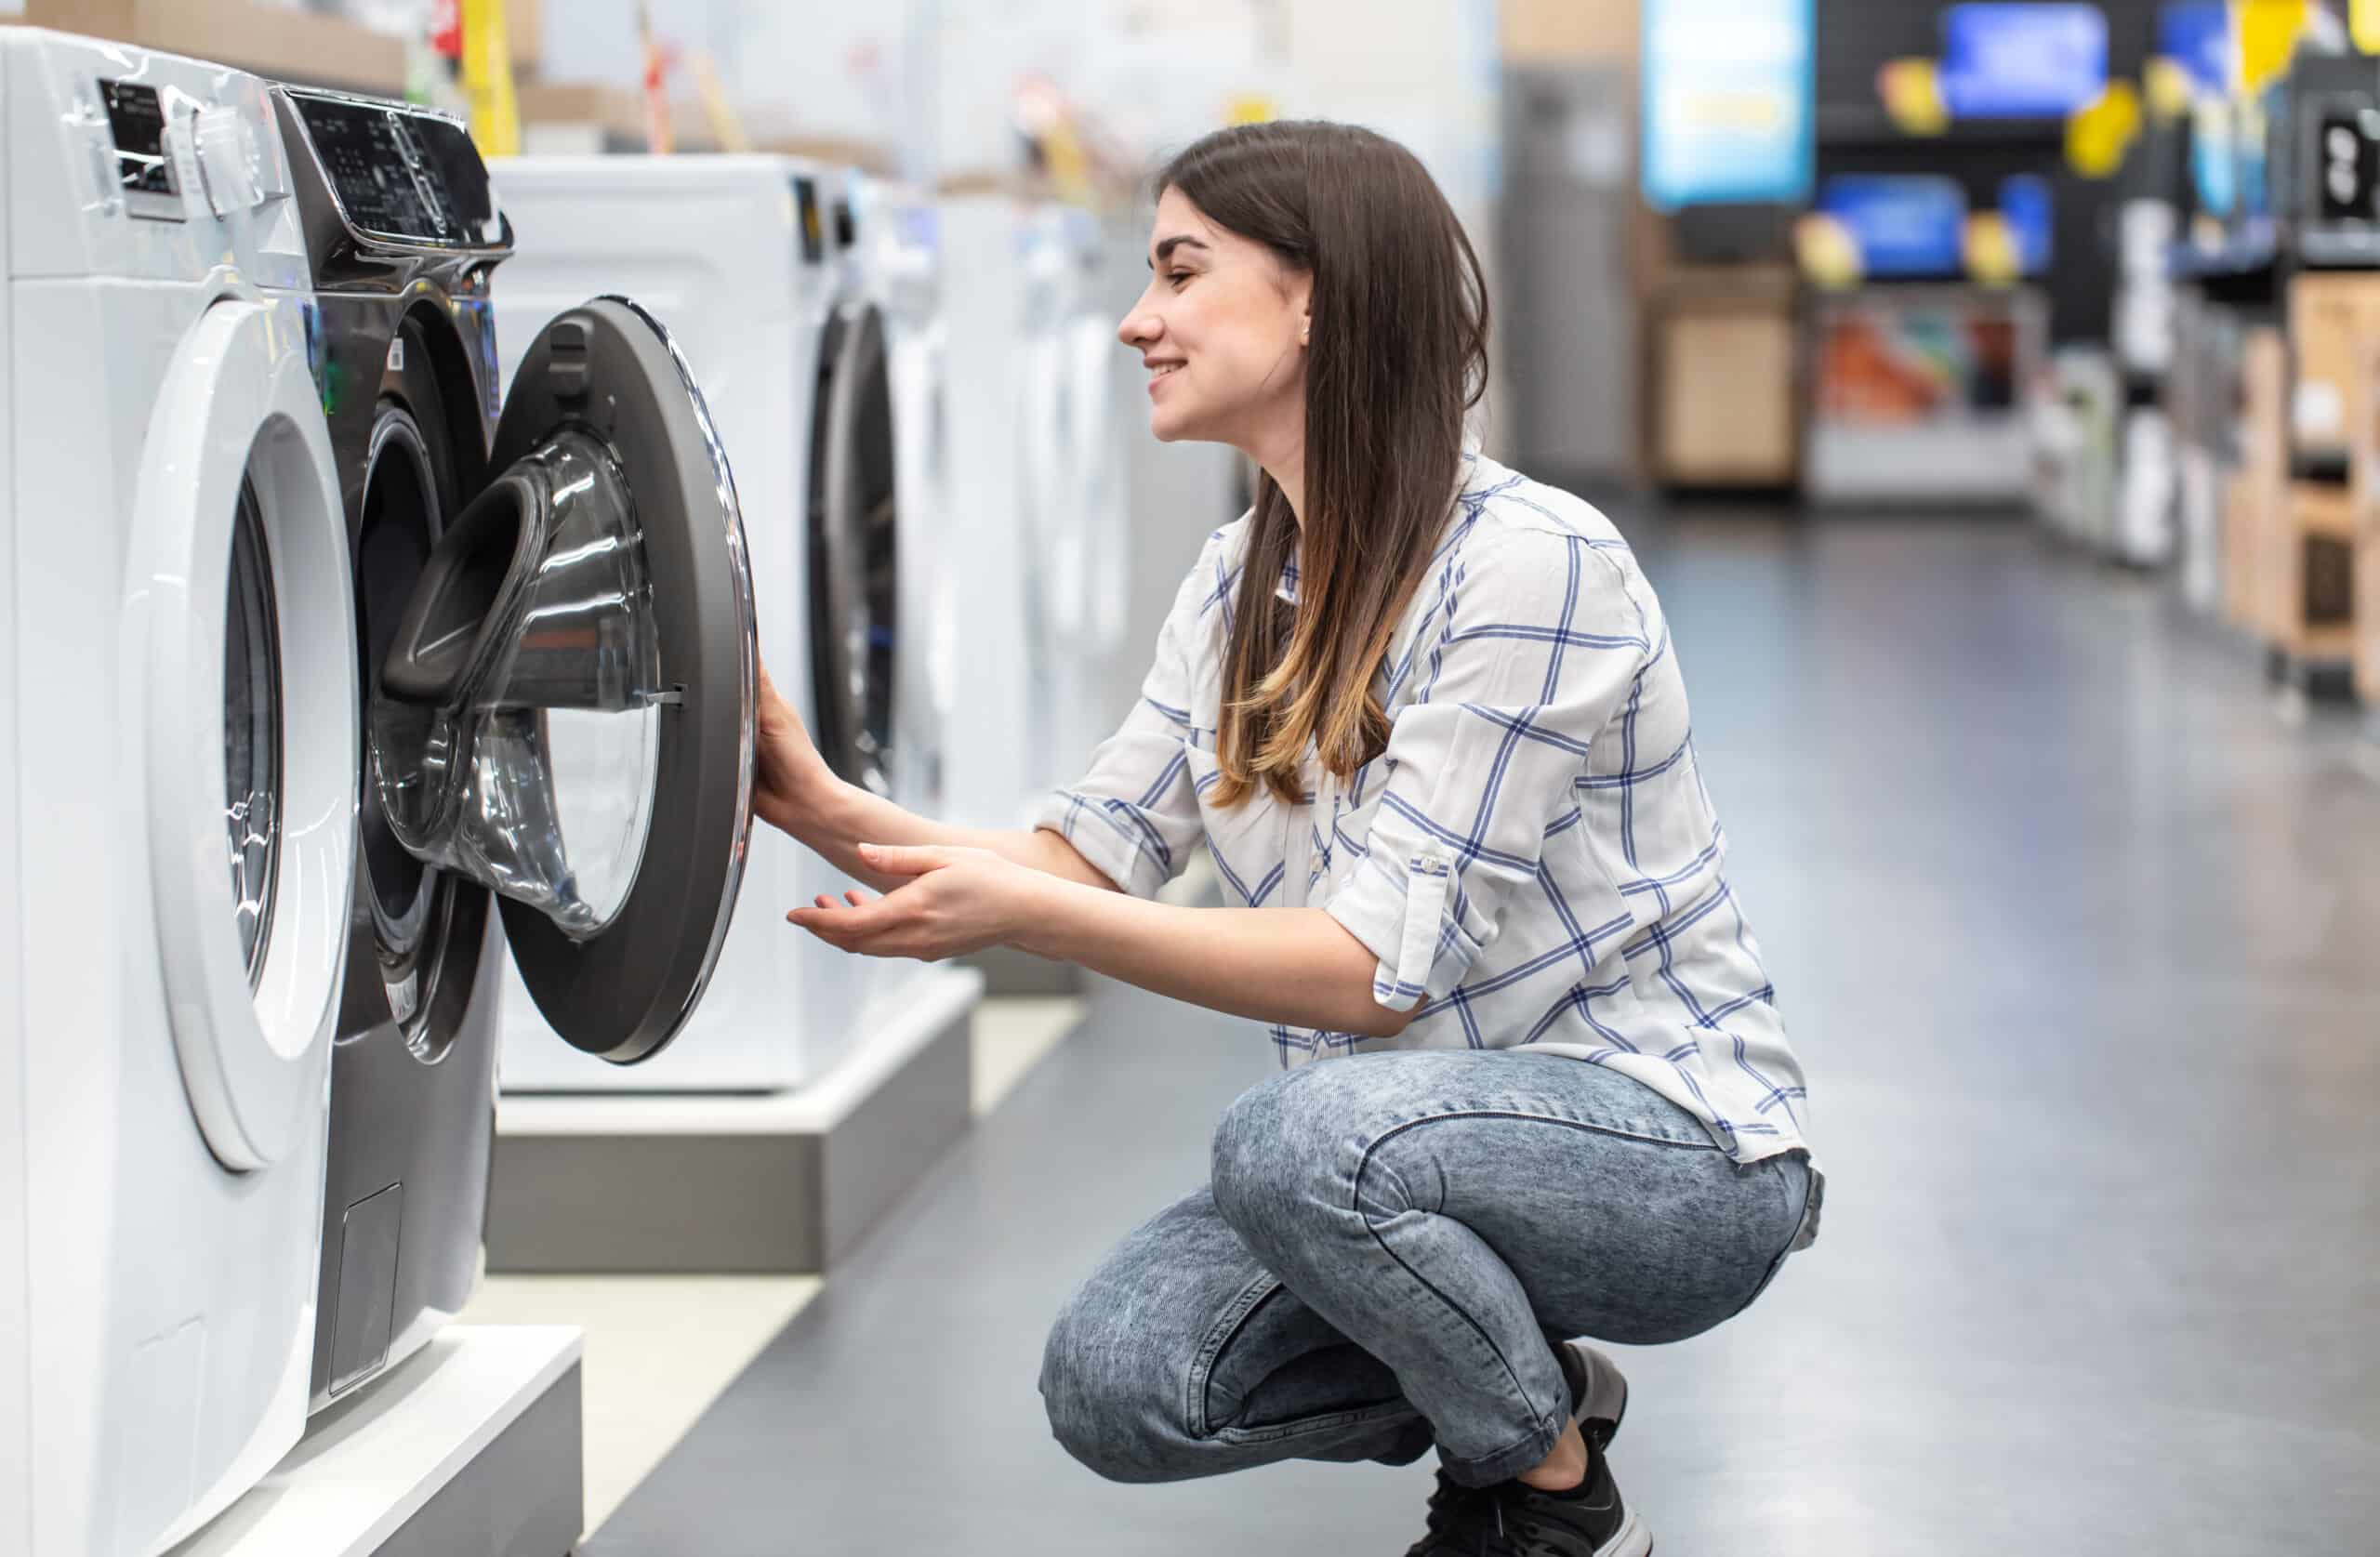 İkinci El Çamaşır Makinesi Alırken Bilmeniz Gereken 10 Şey!